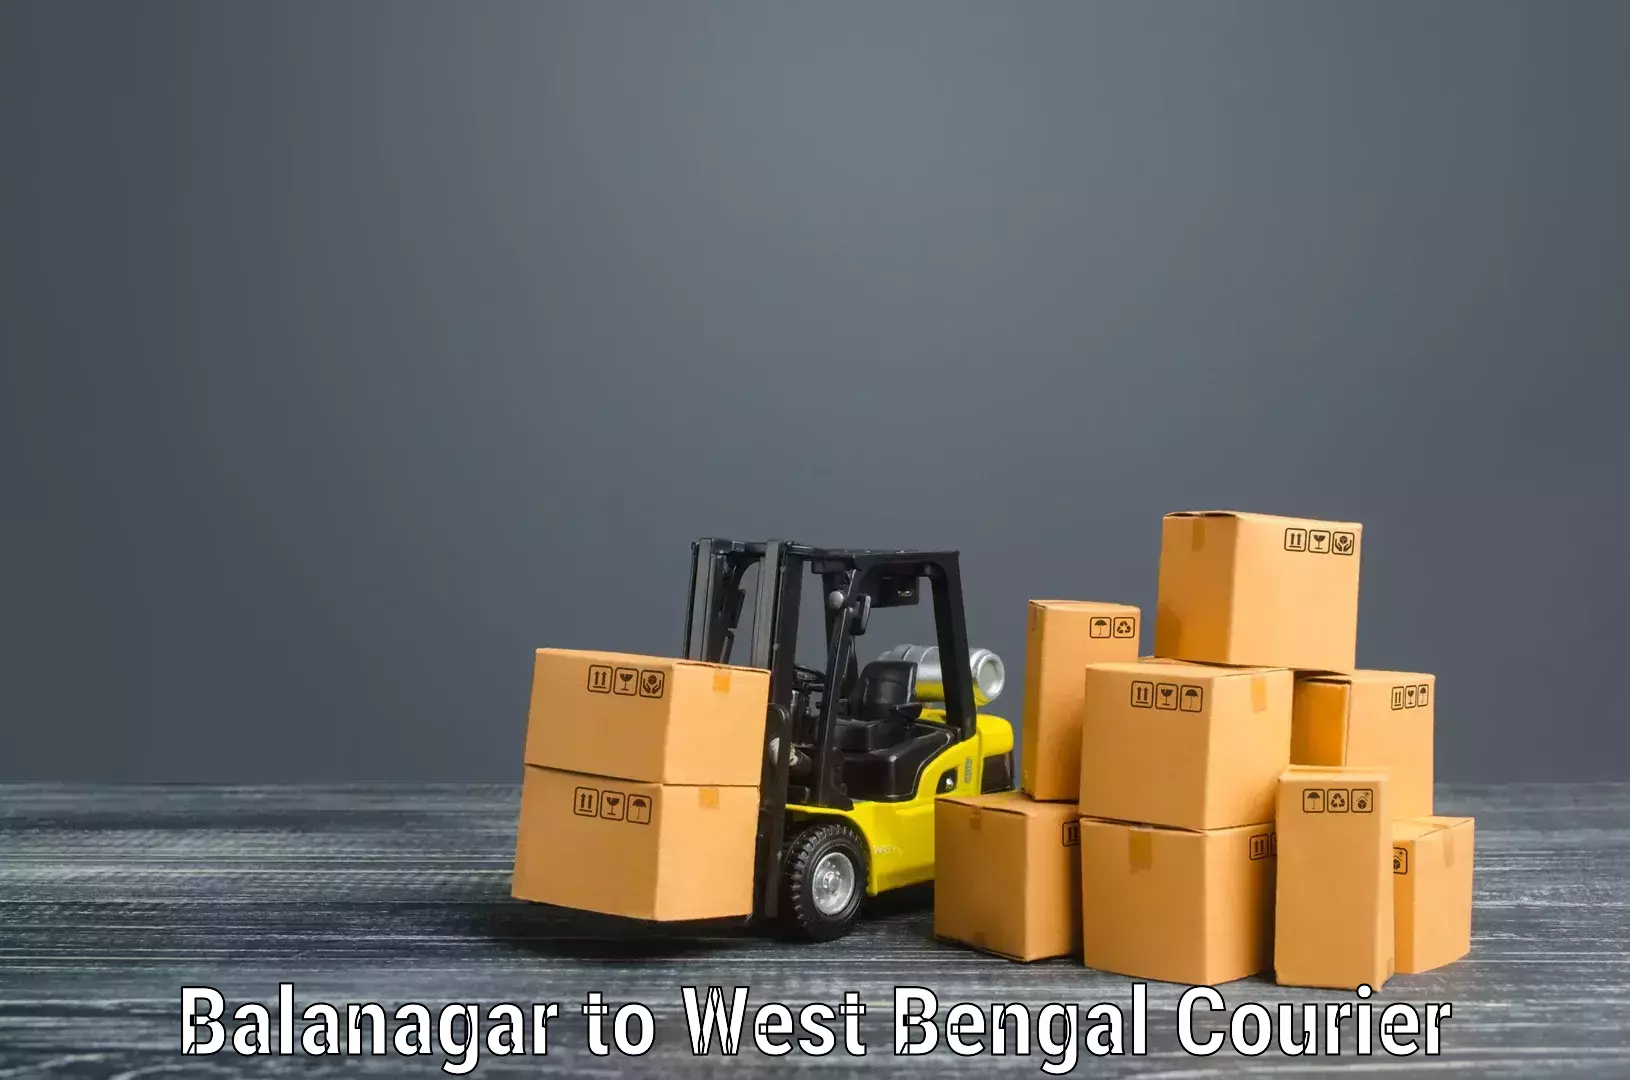 Professional movers Balanagar to Algarah